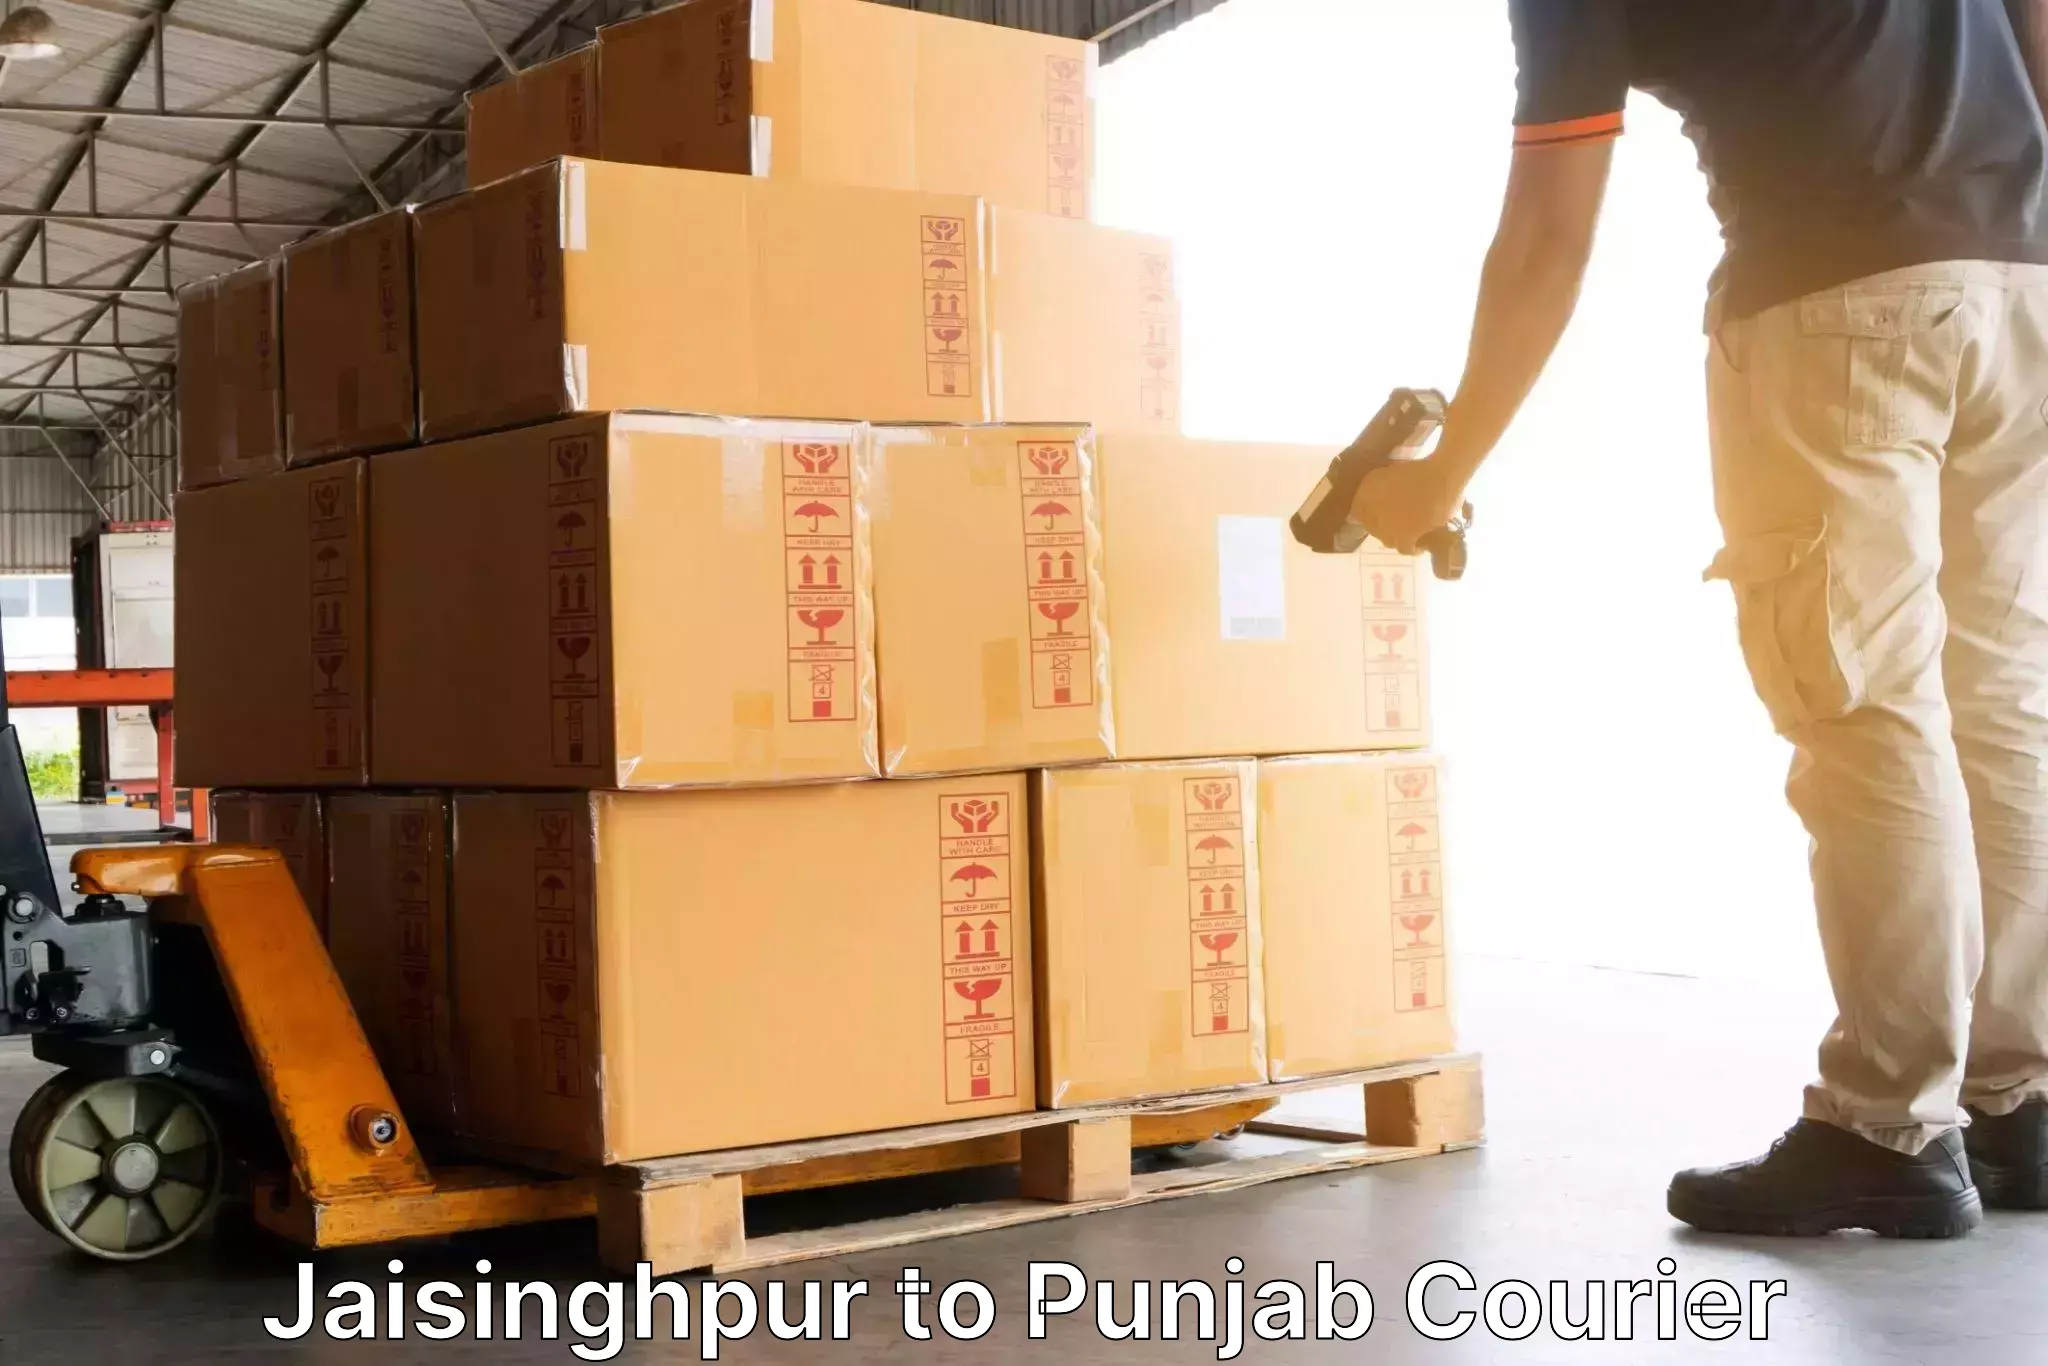 Customized shipping options Jaisinghpur to Malerkotla